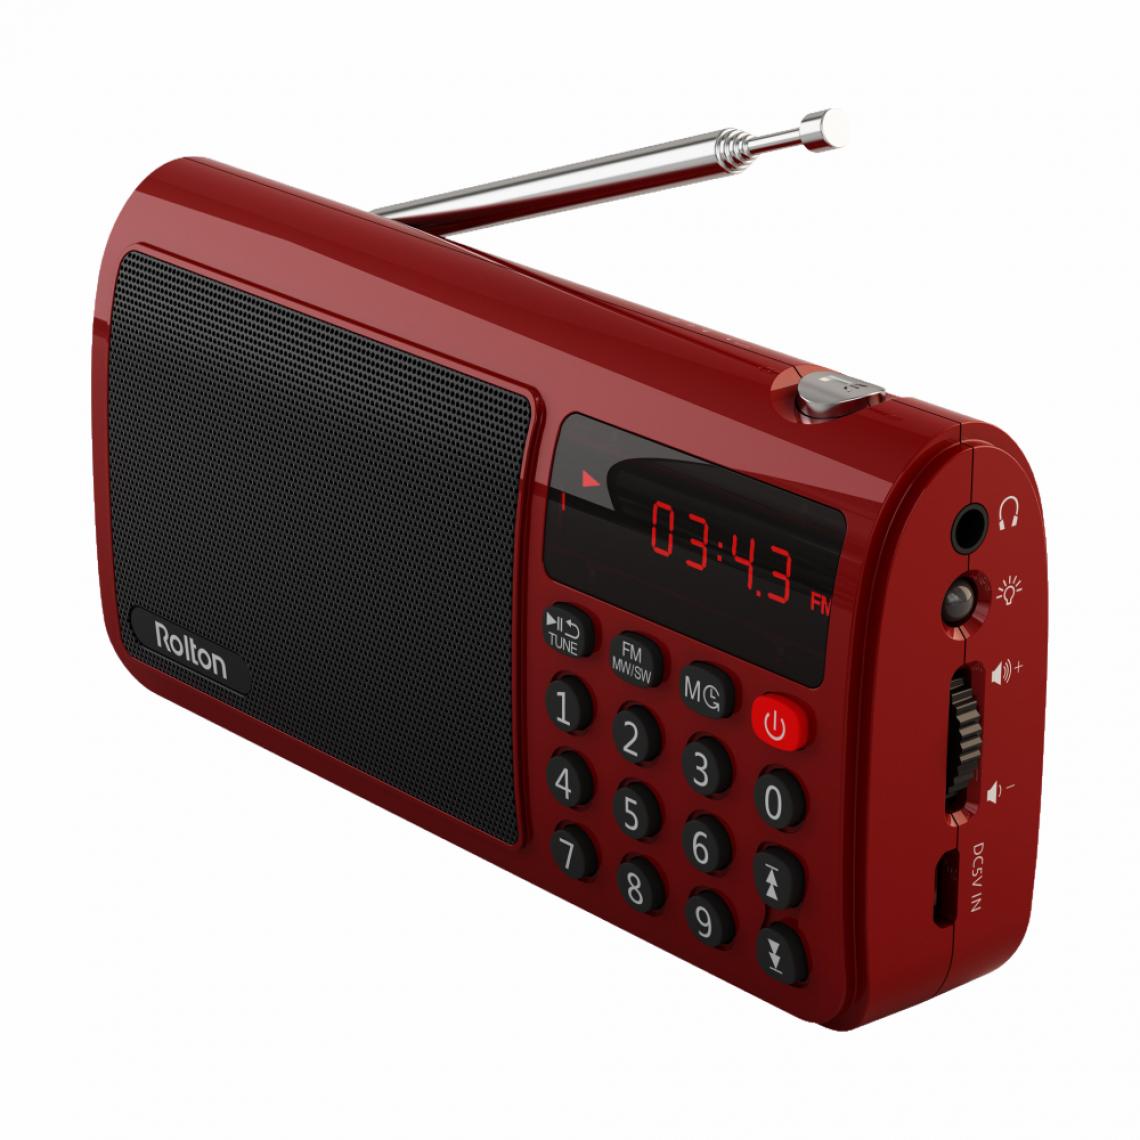 Universal - Rawton T50 Portable World Band FM/Ondes moyennes/Ondes courtes Haut-parleur radio stéréo Lecteur de musique MP3 Carte SD/TF PC iPod Téléphone mobile | Ondes moyennes FM/Ondes courtes | Radio stéréo(Rouge) - Radio